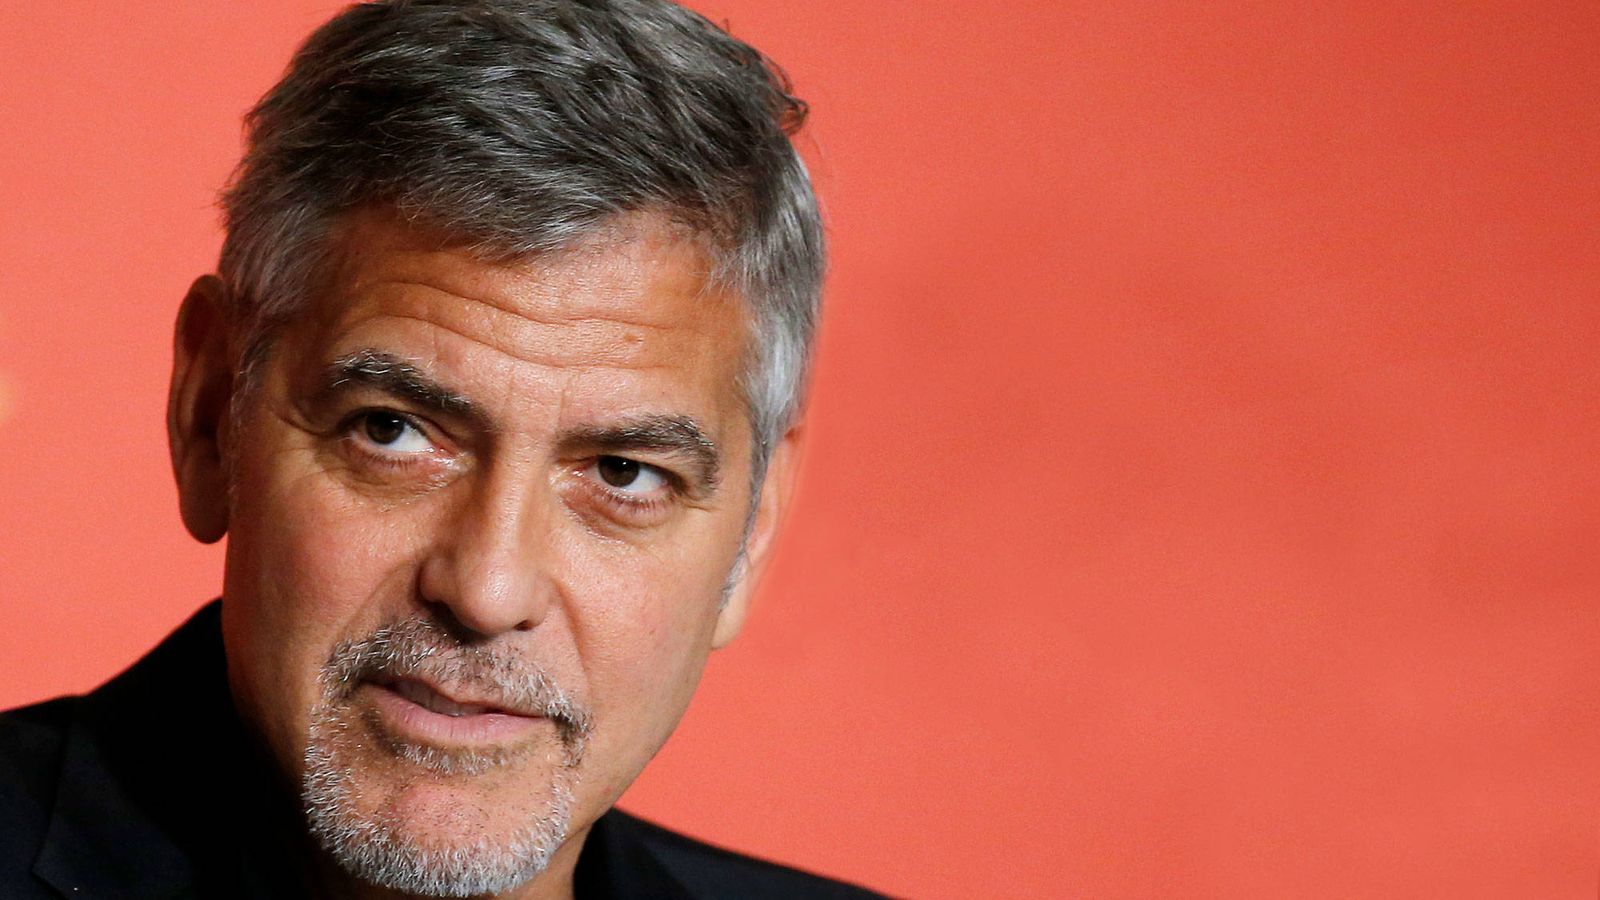 Foto: George Clooney, en una imagen reciente. (Getty)